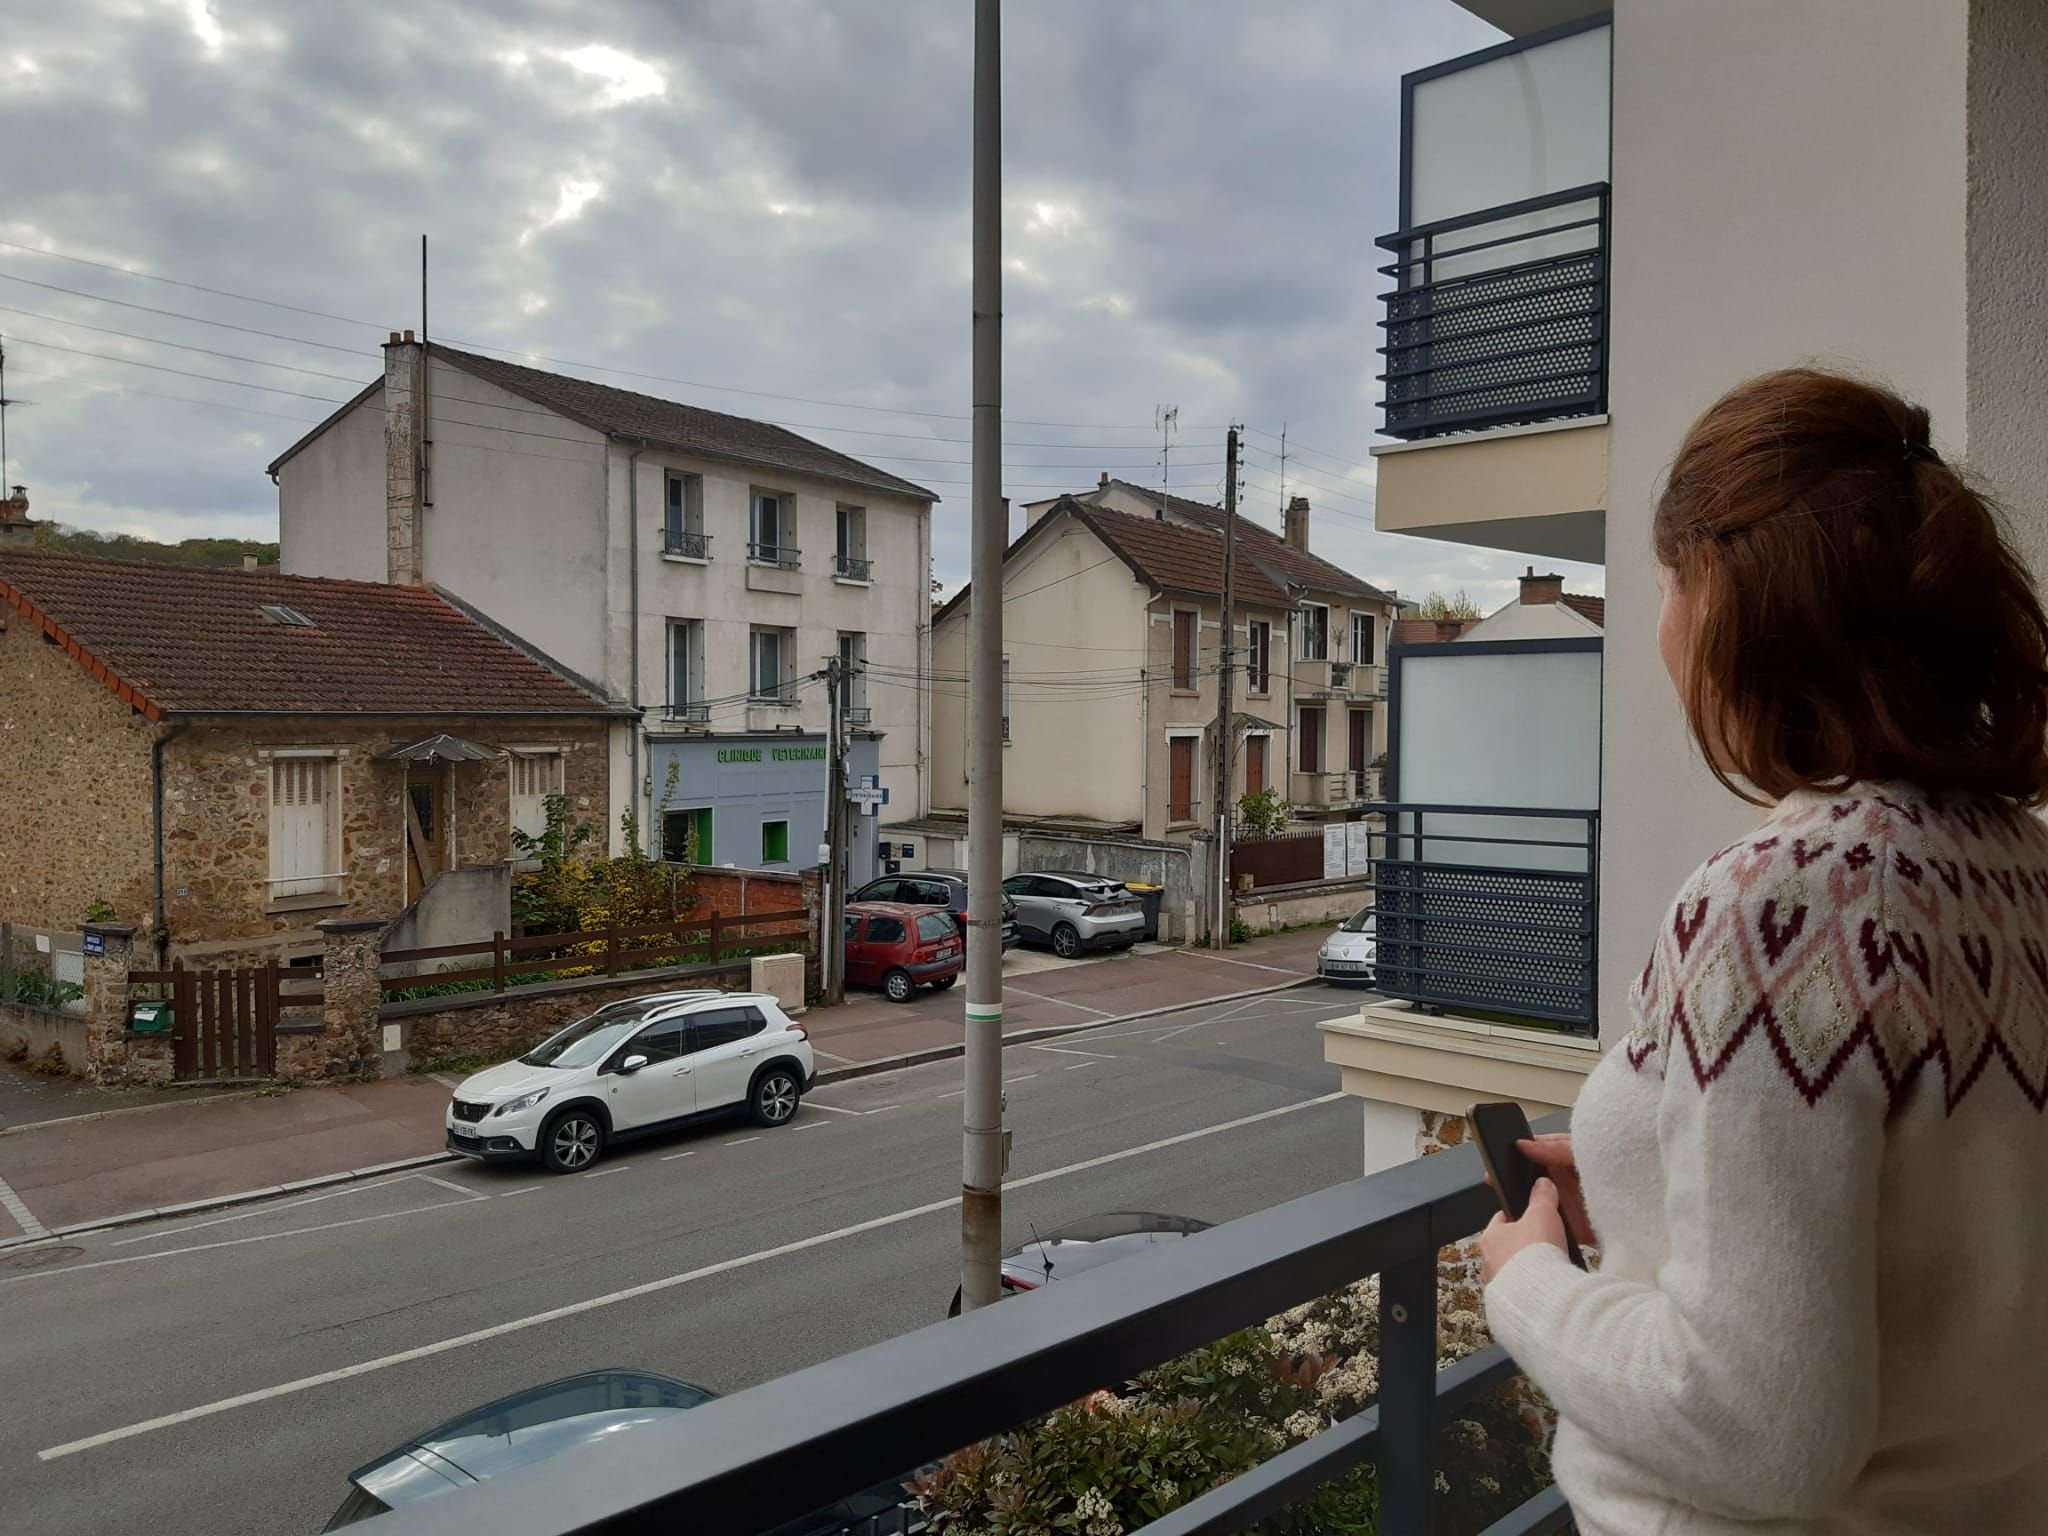 Saint-Cyr-l'École (Yvelines), le 25 avril. Les riverains appréhendent la construction d'un nouveau programme immobilier pile en face de chez eux. Ils redoutent le vis-à-vis. LP/Véronique Beaugrand